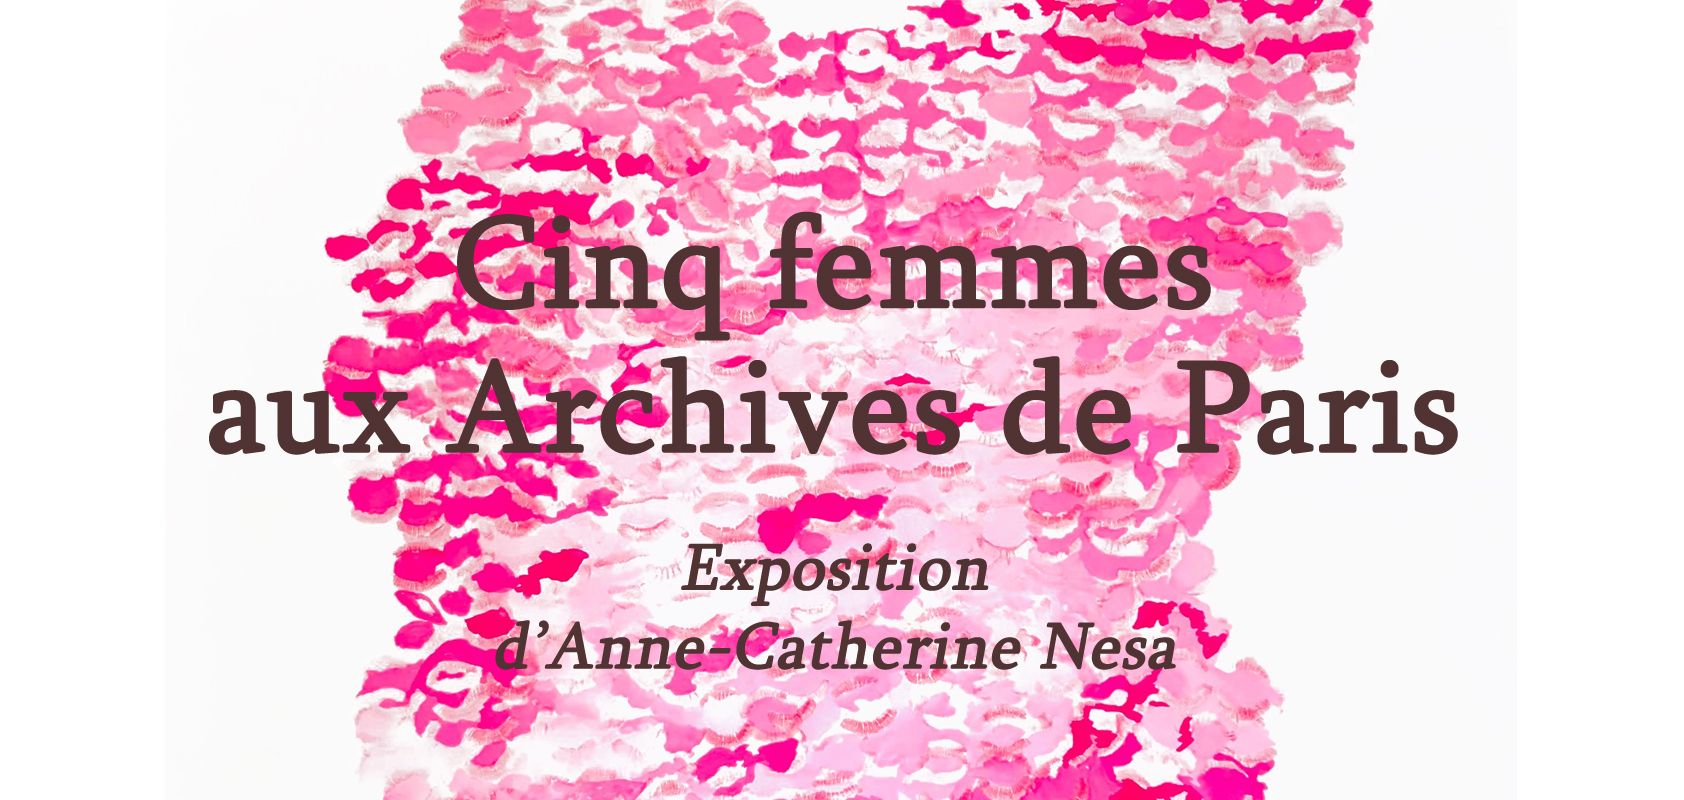 Affiche de l'exposition "Cinq femmes aux Archives de Paris"